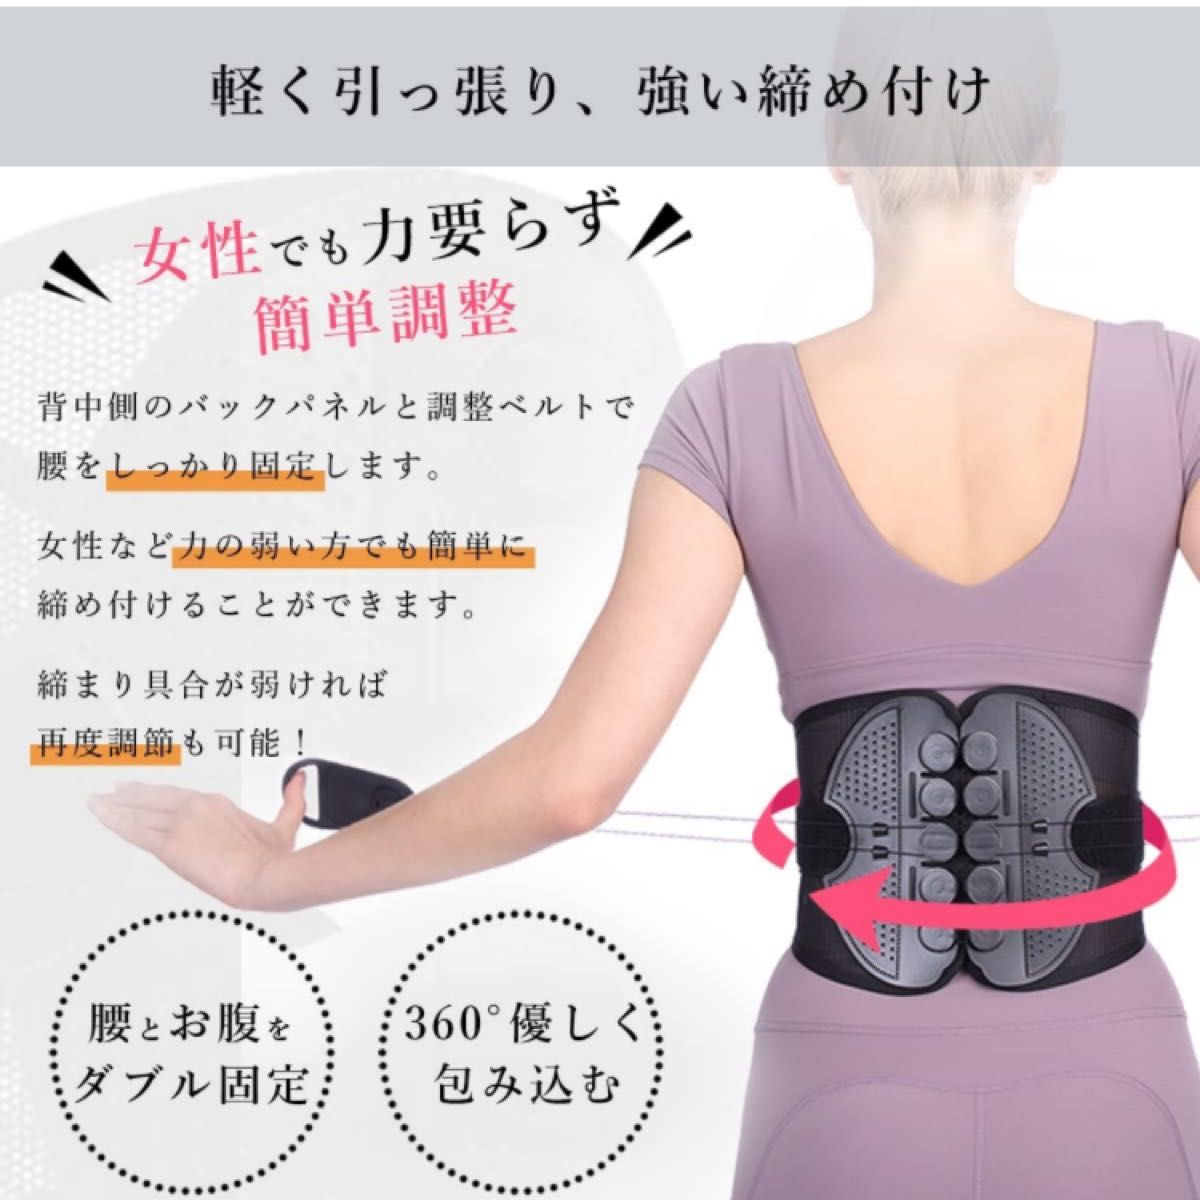 Newlish 日本企画 腰用 サポートベルト 腰用ベルト 腰サポーター 腰サポート 薄型 クッション調節パッド付き 通気性 